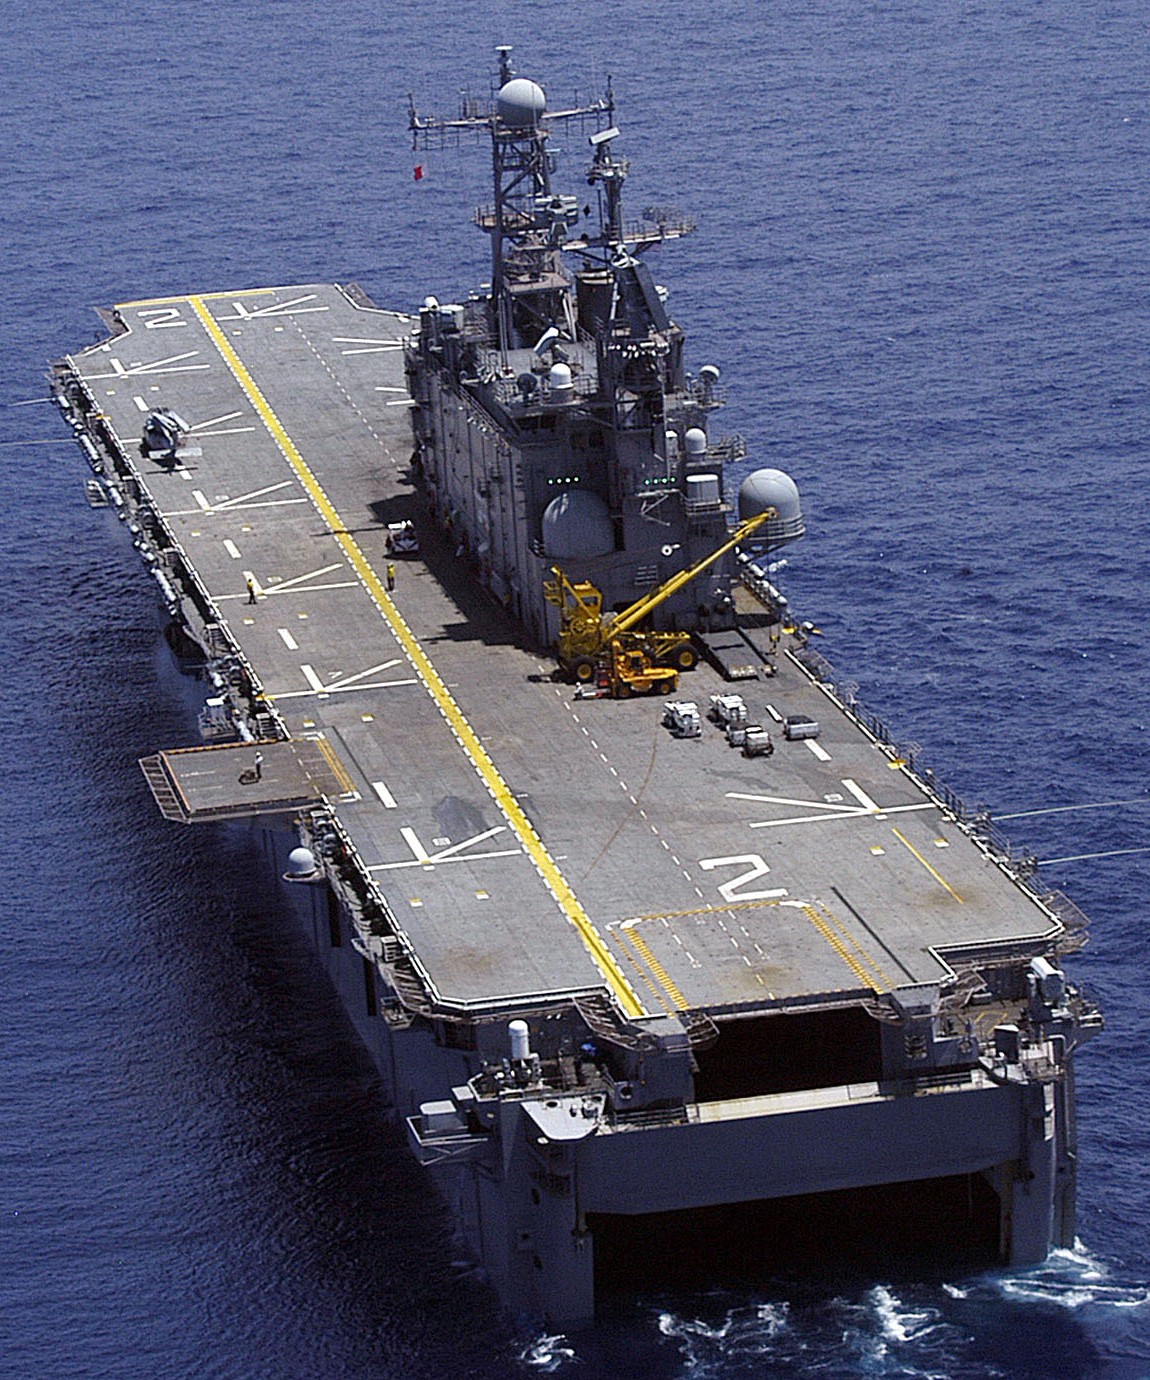 lha-2 uss saipan tarawa class amphibious assault ship us navy 24 atlantic ocean